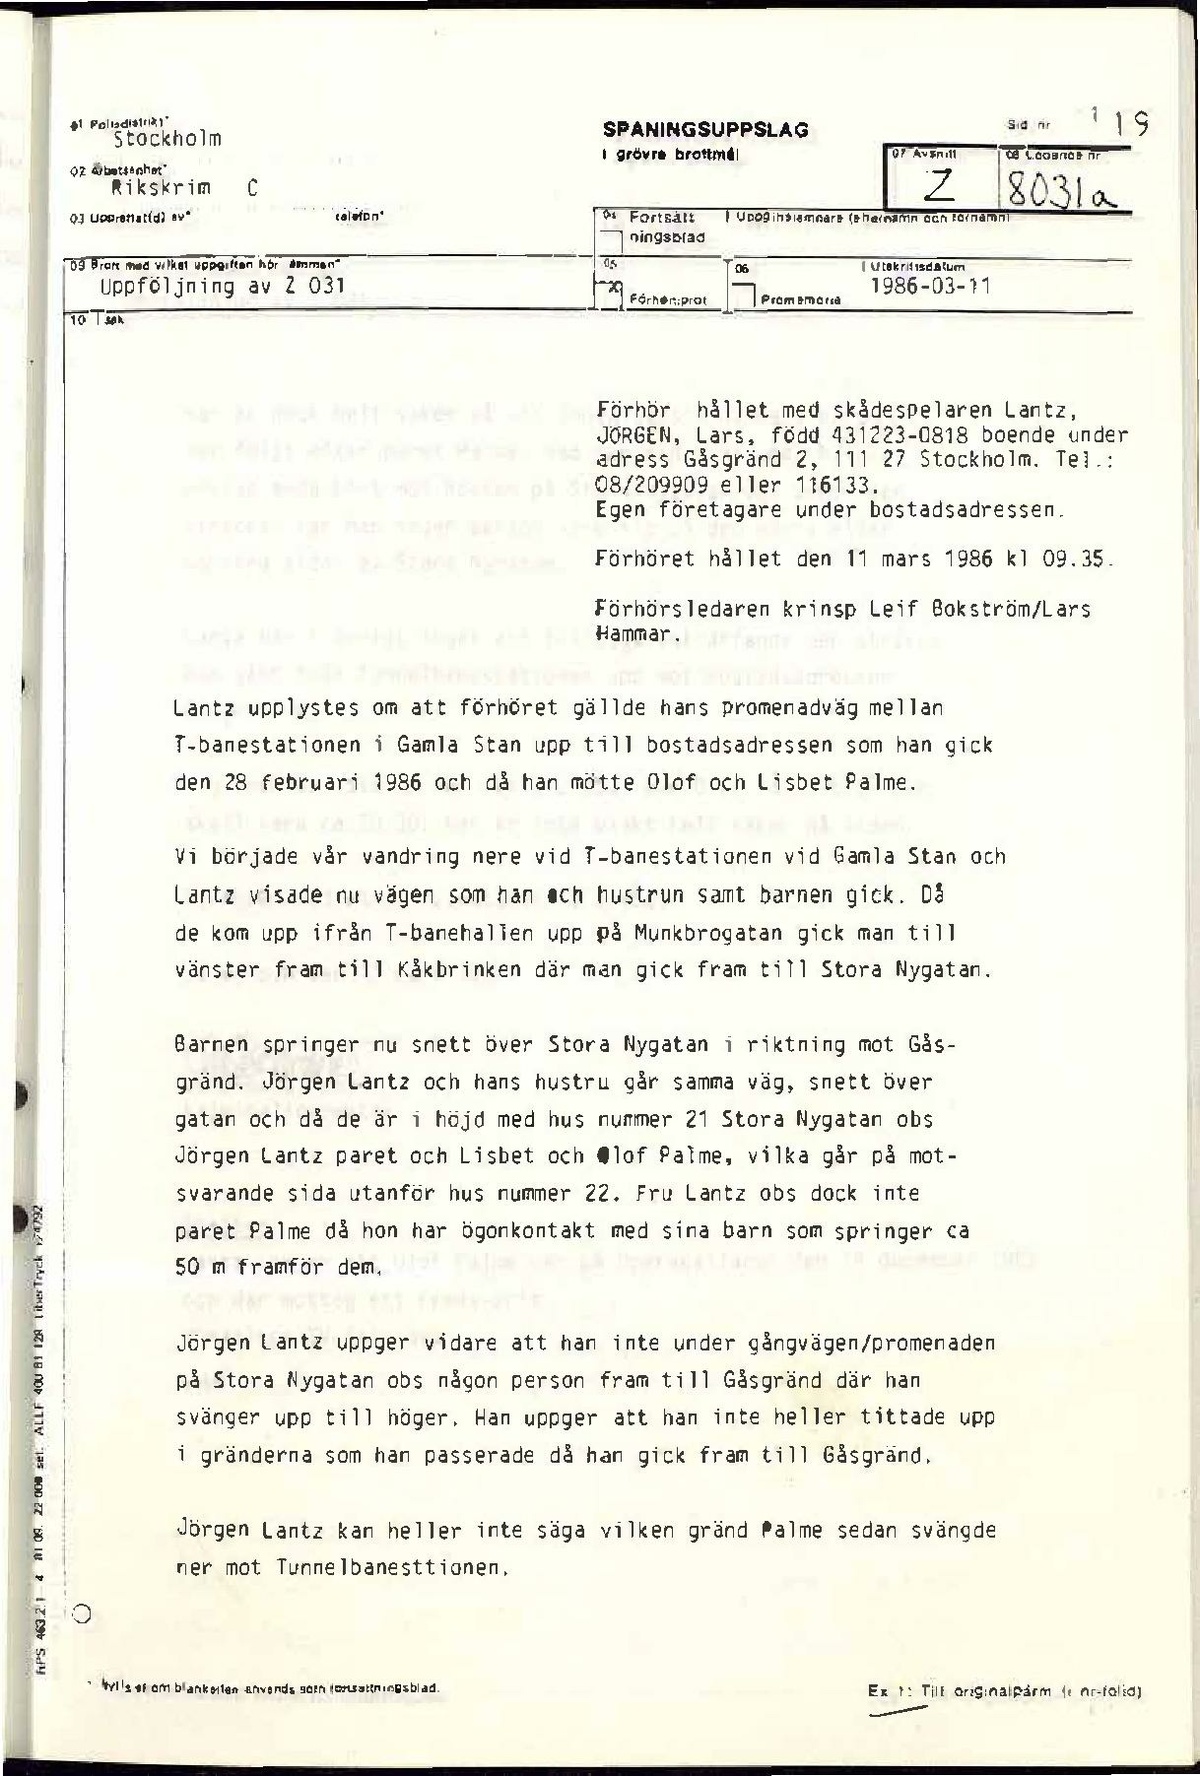 Pol-1986-03-11 0935 Z8031-00-A Förhör med Jörgen Lantz om rekonstruktion av promenadväg till möte med Palme.pdf